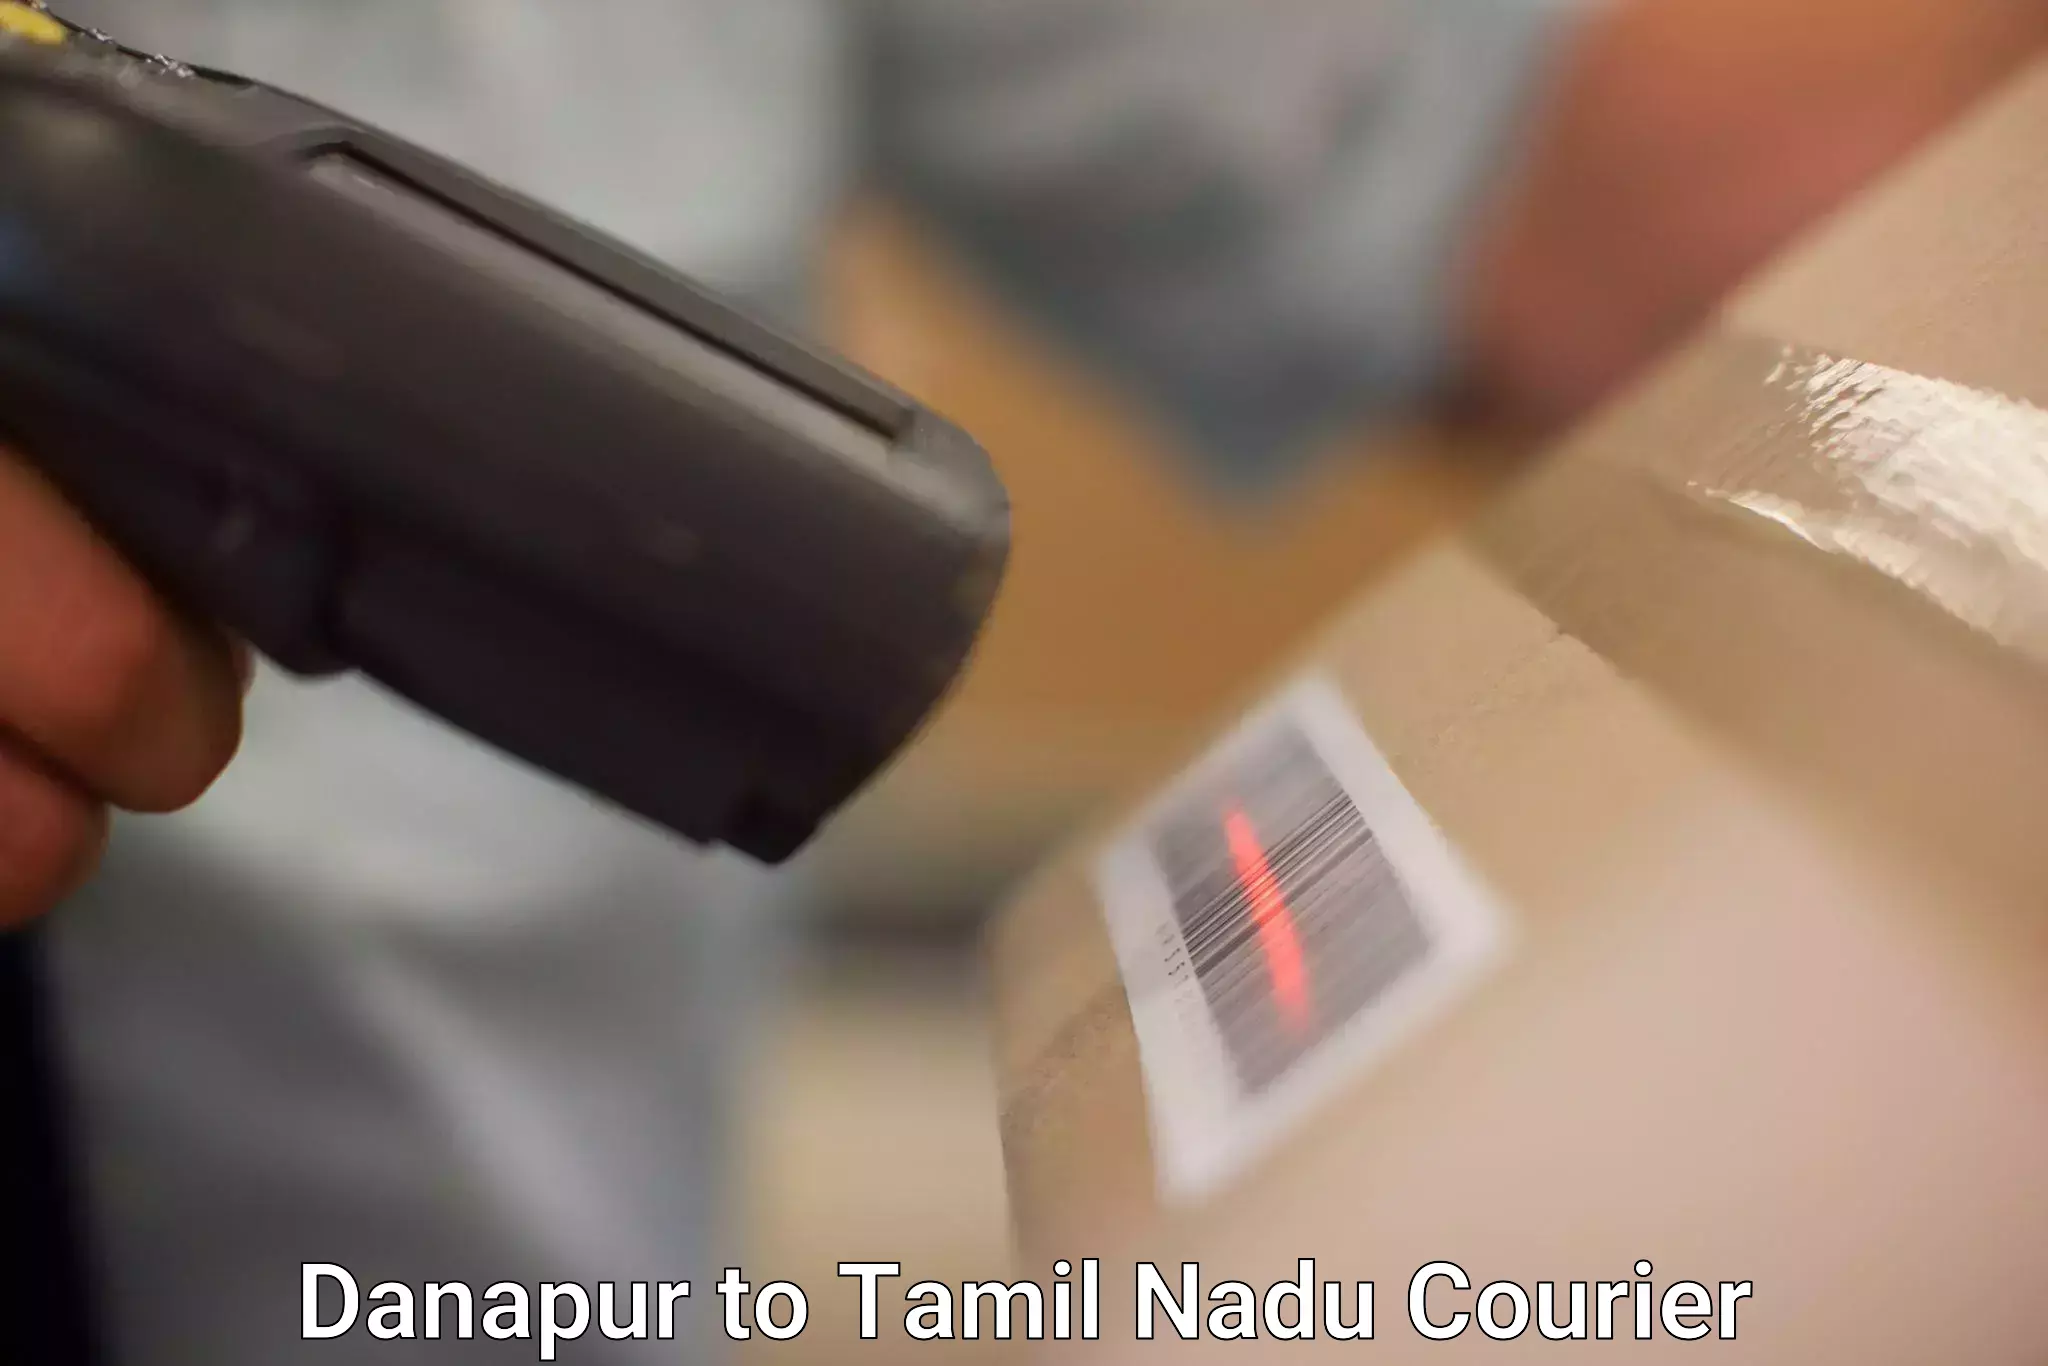 Courier service comparison Danapur to Tamil Nadu